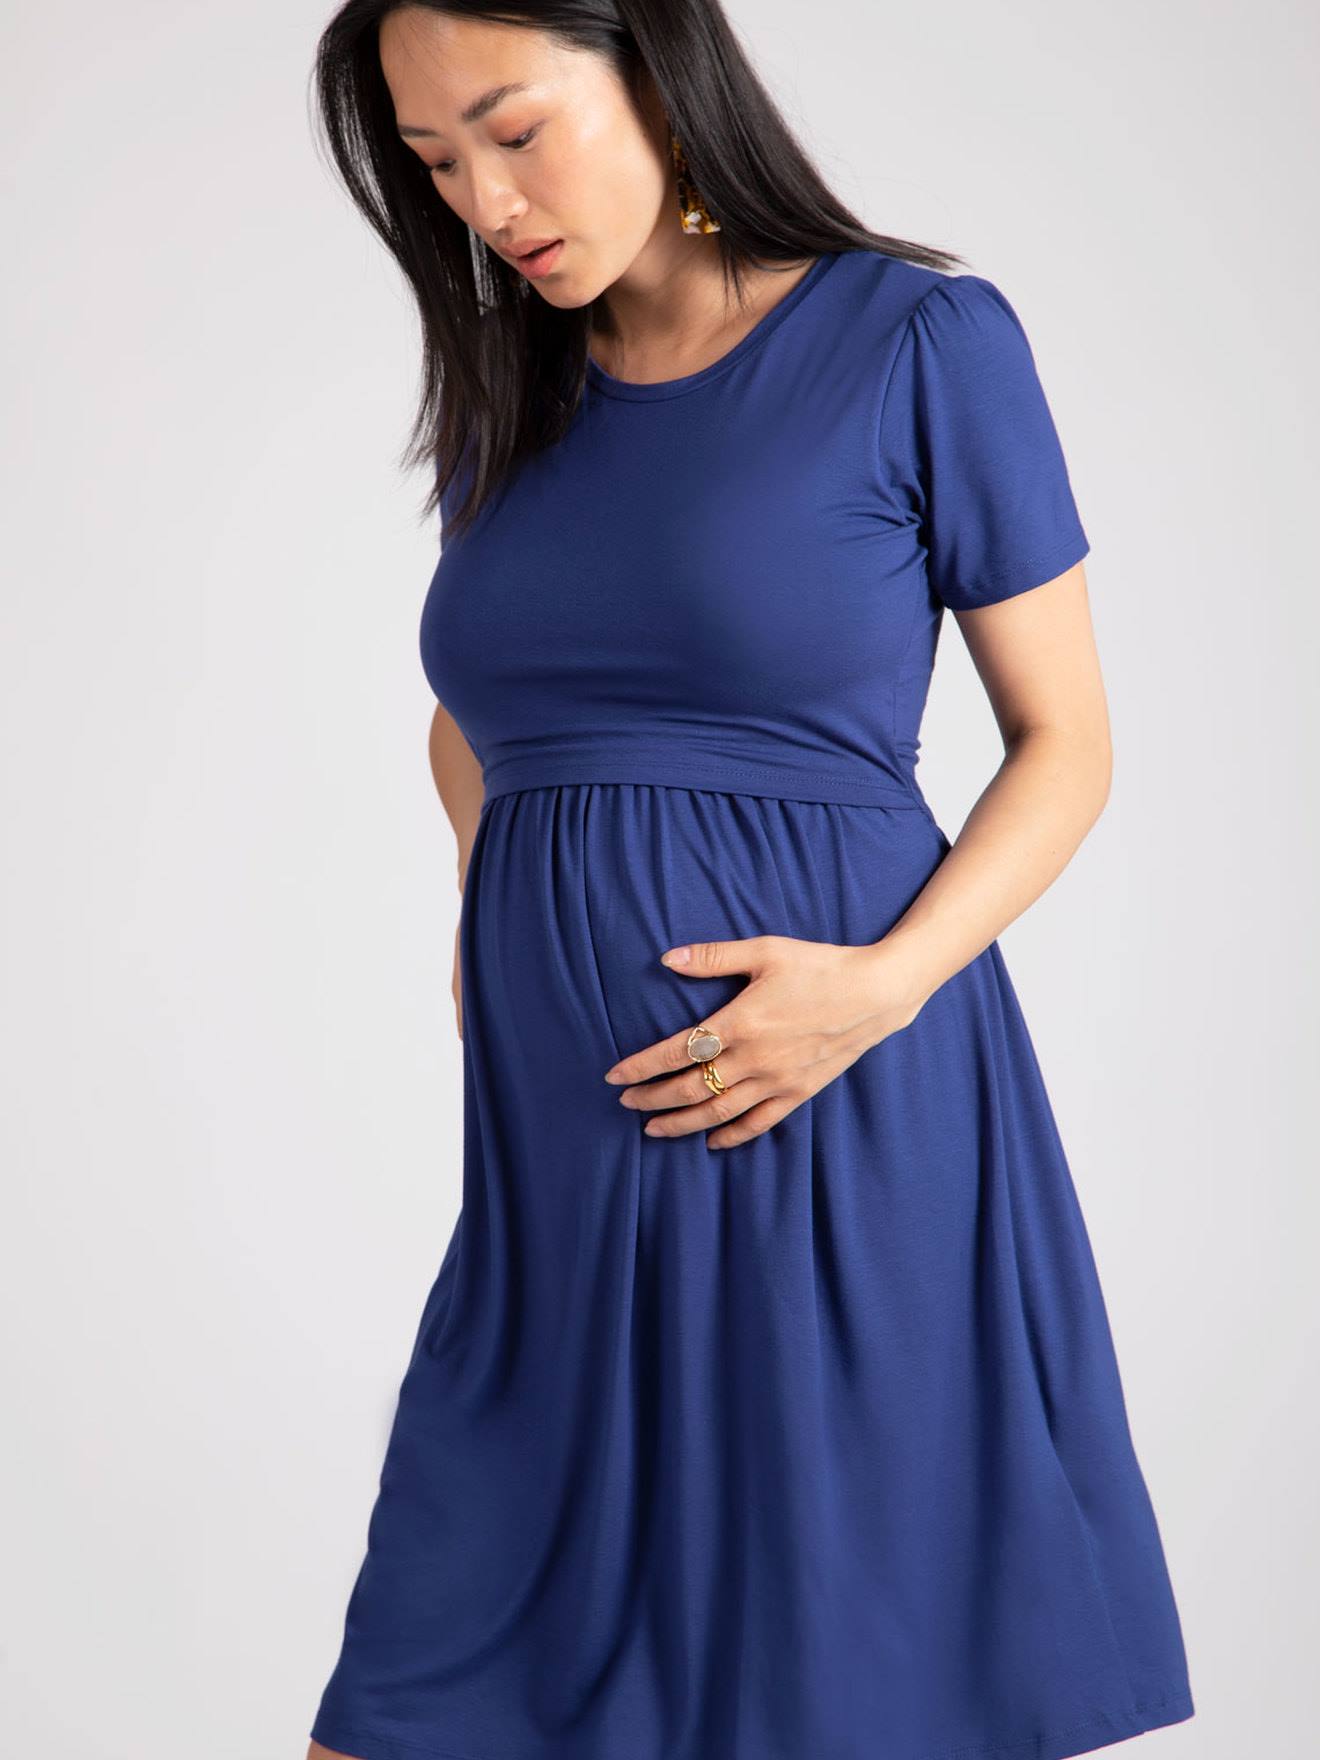 Bientôt maman ? Une mode désirable, accessible et durable avec Envie de  Fraise - Biba Magazine